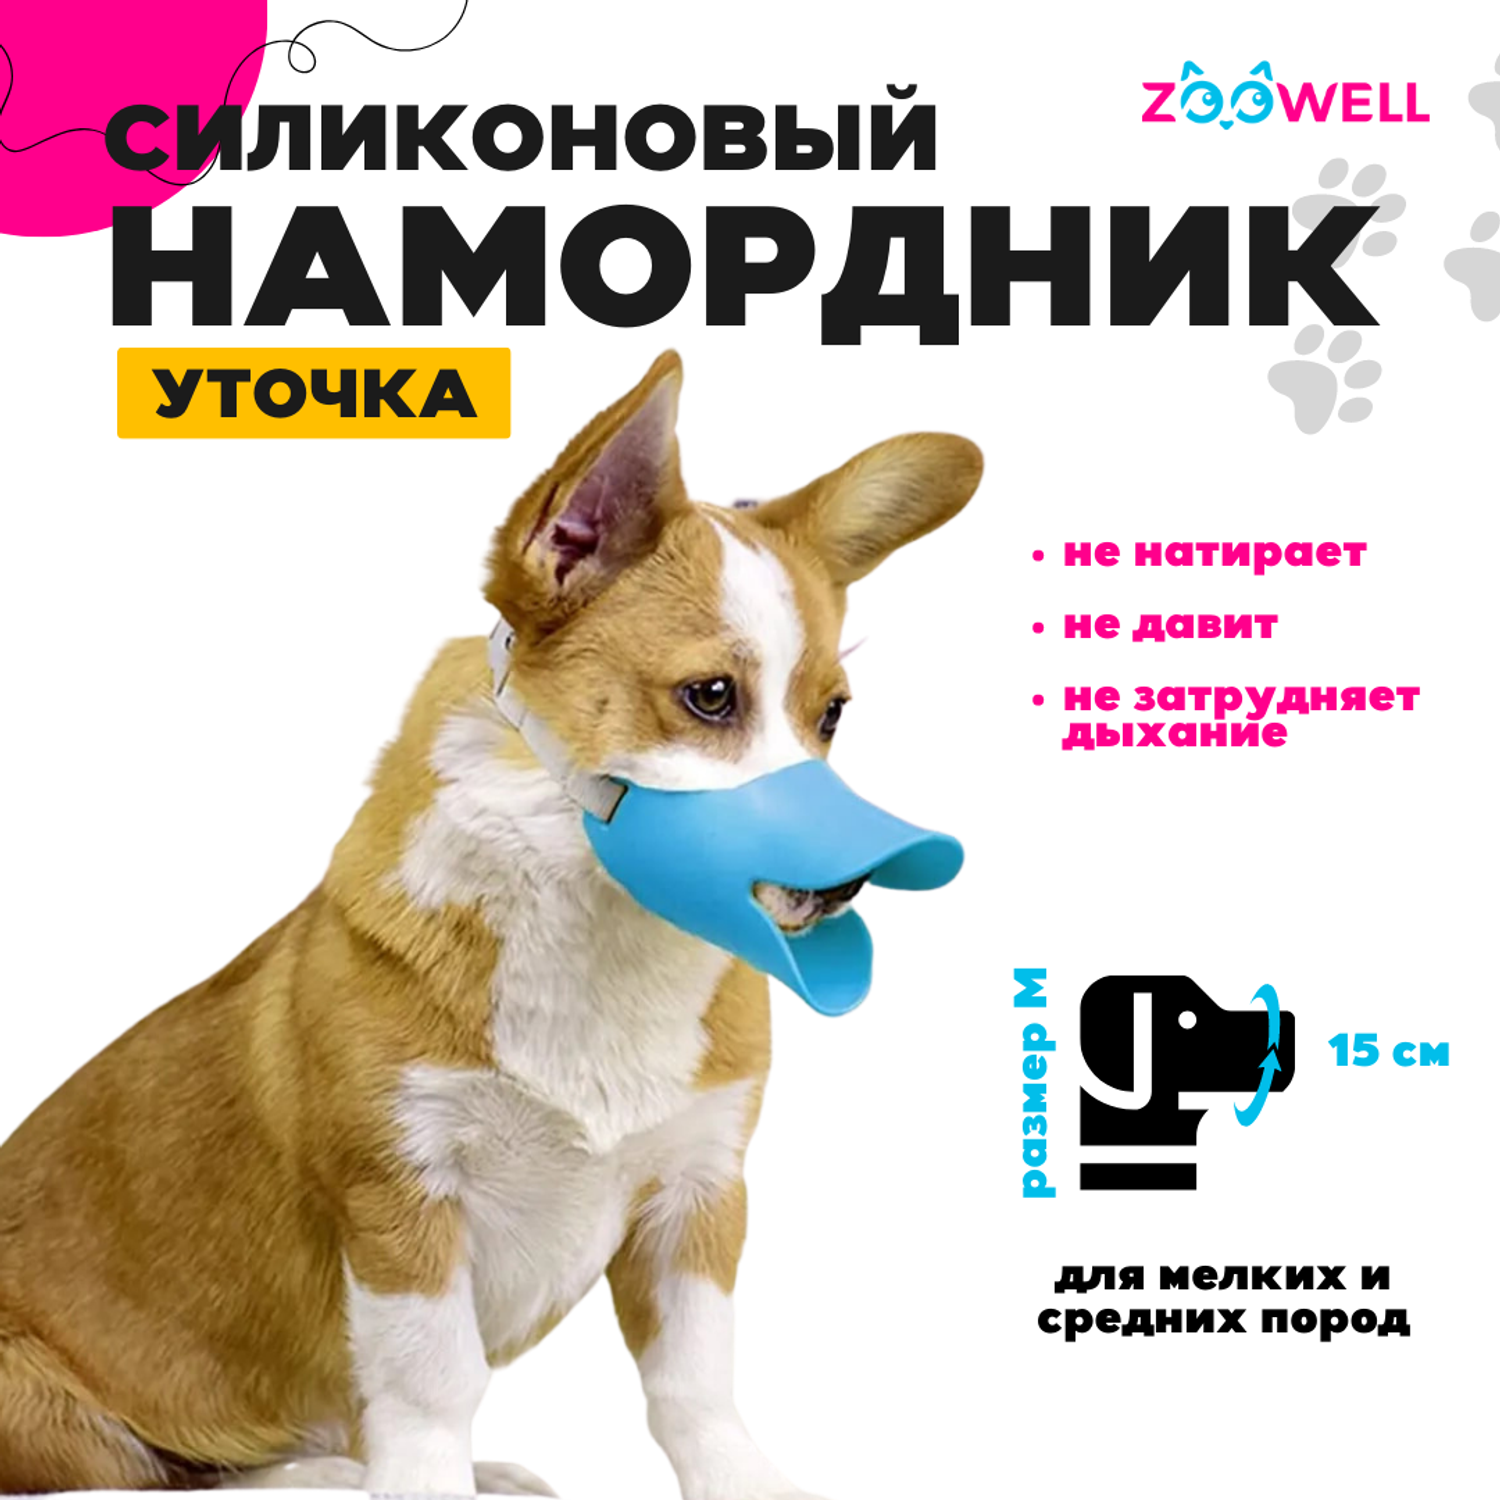 Намордники для собак купить в Киеве по самым низким ценам